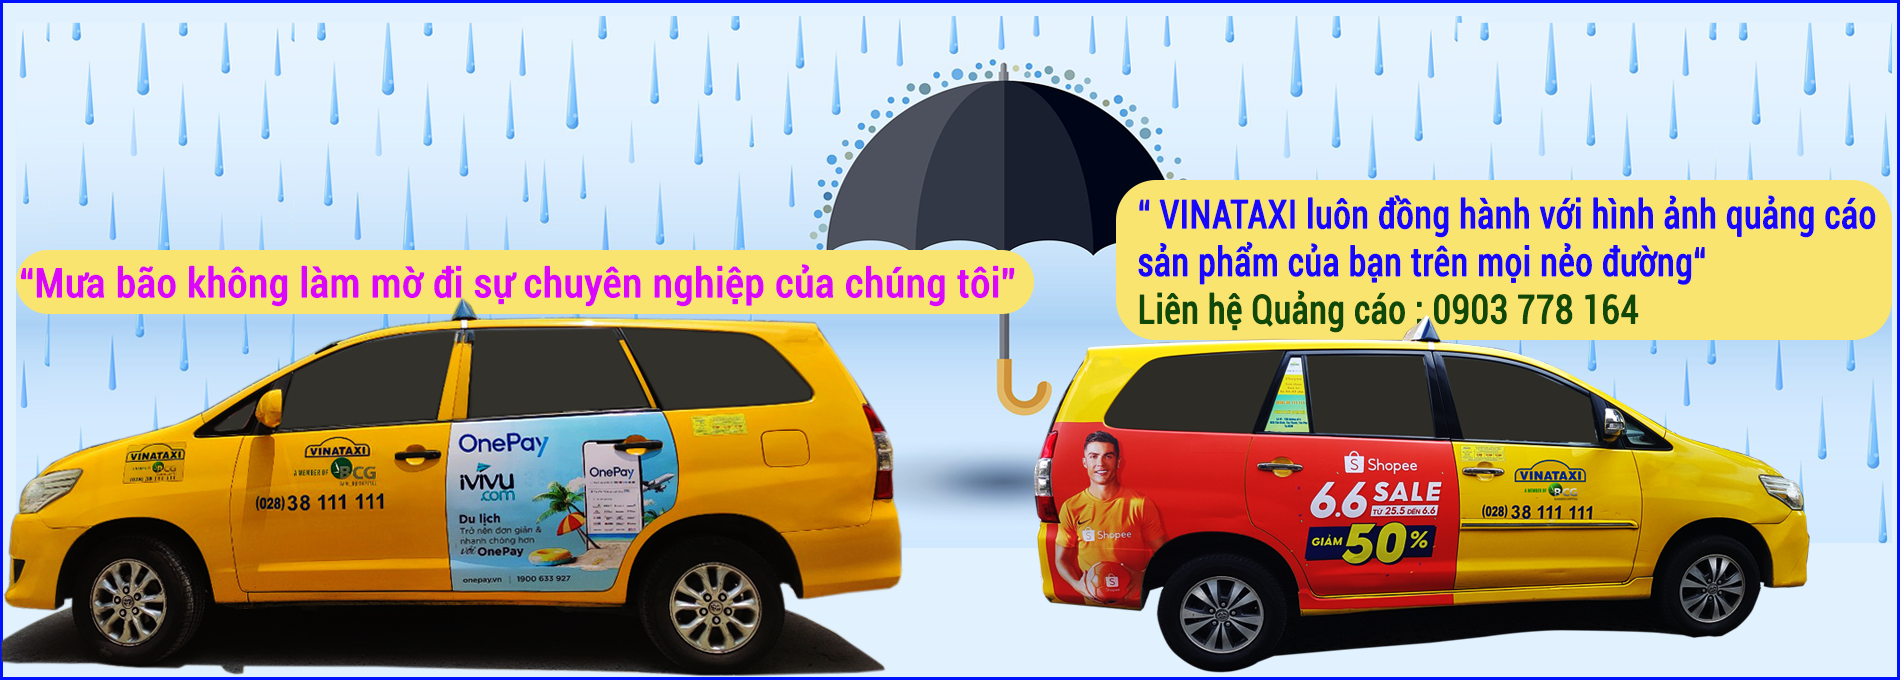 Quảng cáo, Vinataxi, tài xế, xe taxi